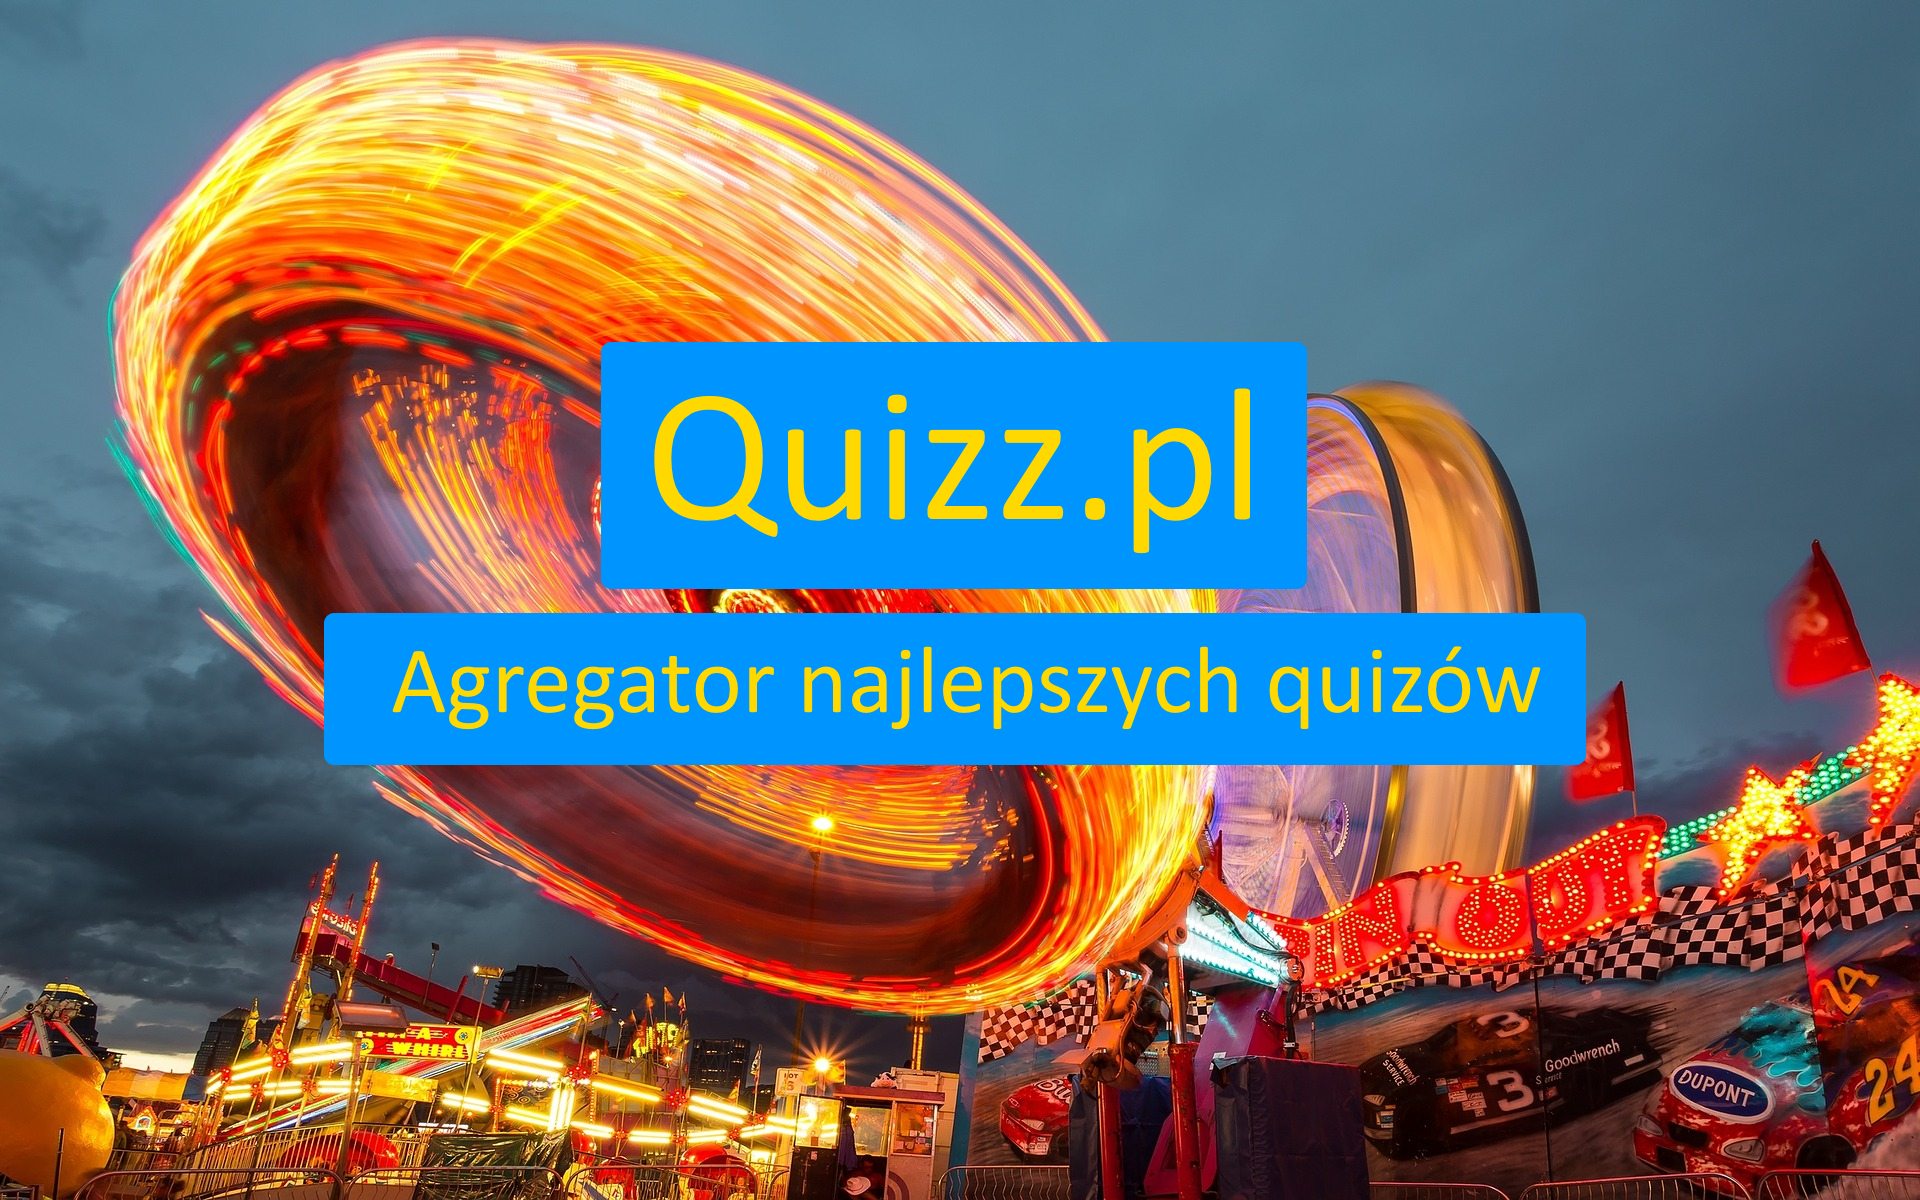 Legendy - bezpłatne quizy, testy wiedzy i ankiety - www.quizz.pl